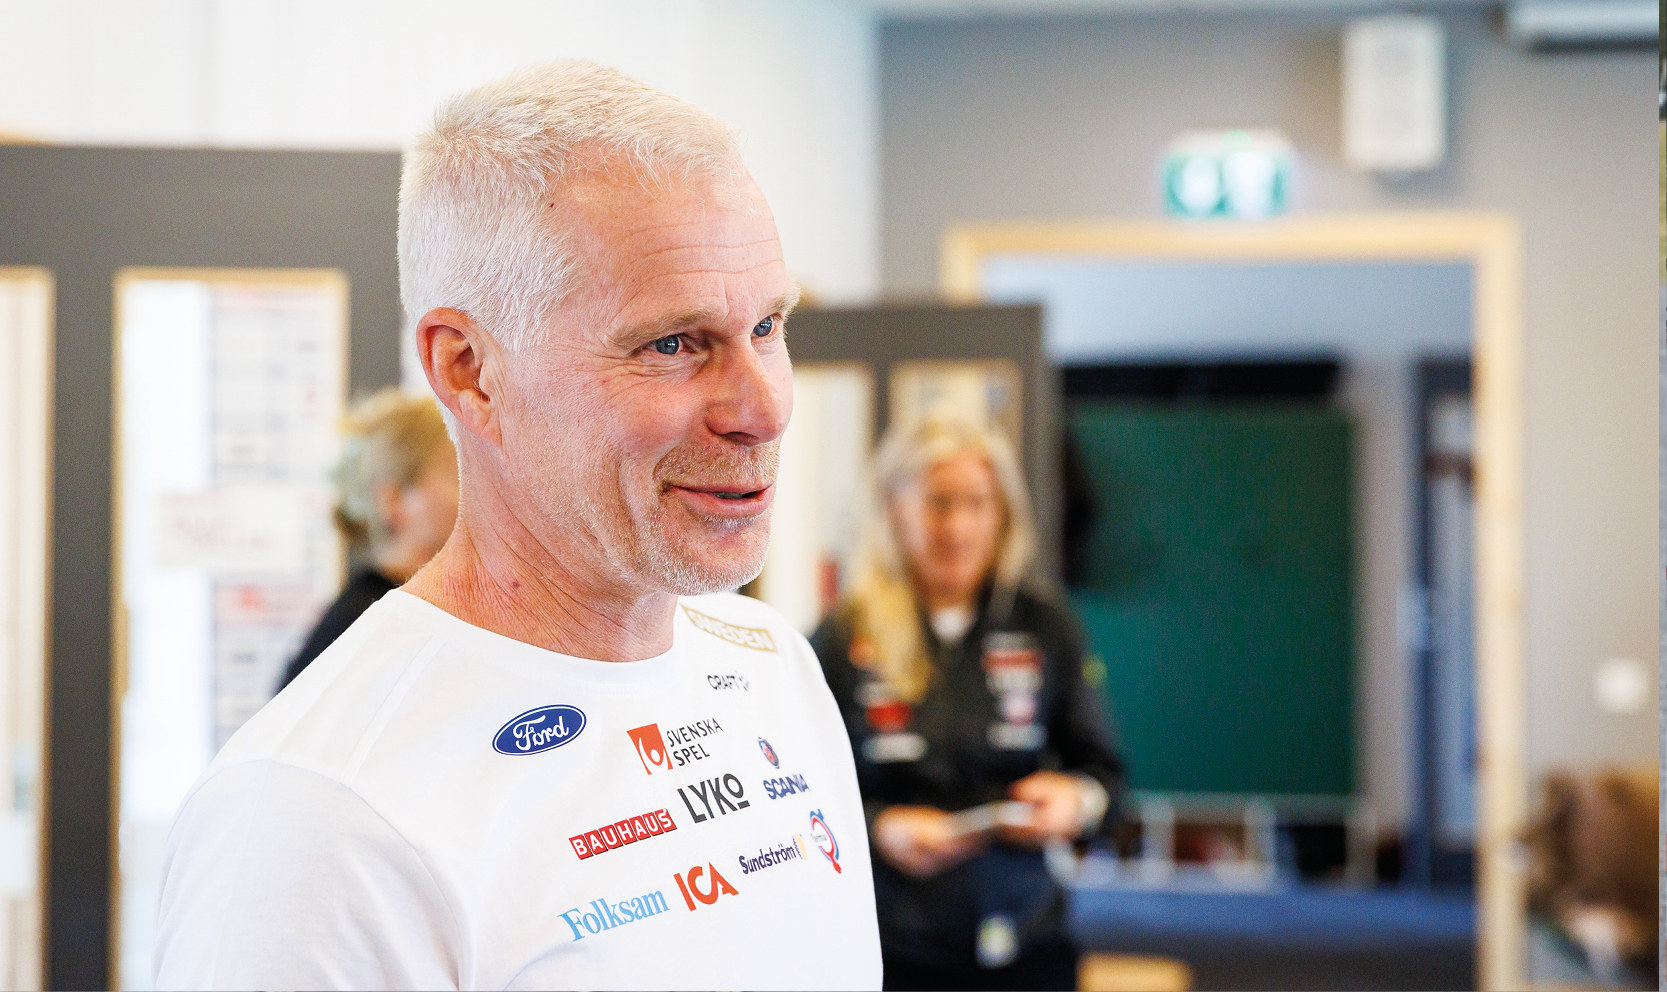 Längdchef Lars Öberg ser framemot perioden som stundar.